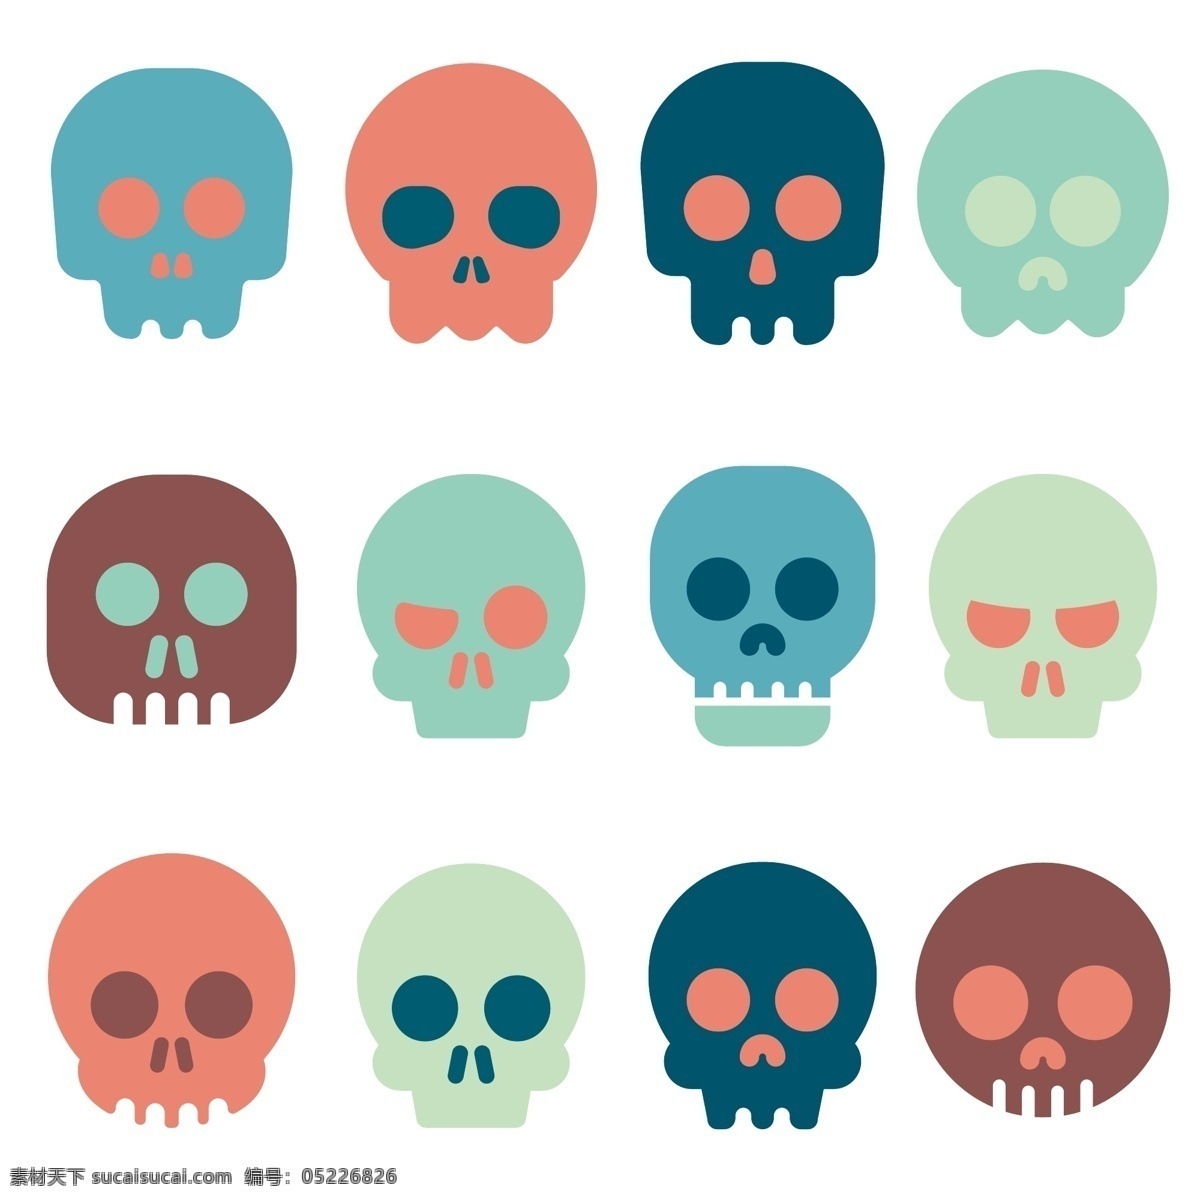 彩色图标颅骨 图标 头骨 颜色 人 头 骷髅 设置 死亡 符号 骨 集合 死 收集 有色 头盖骨